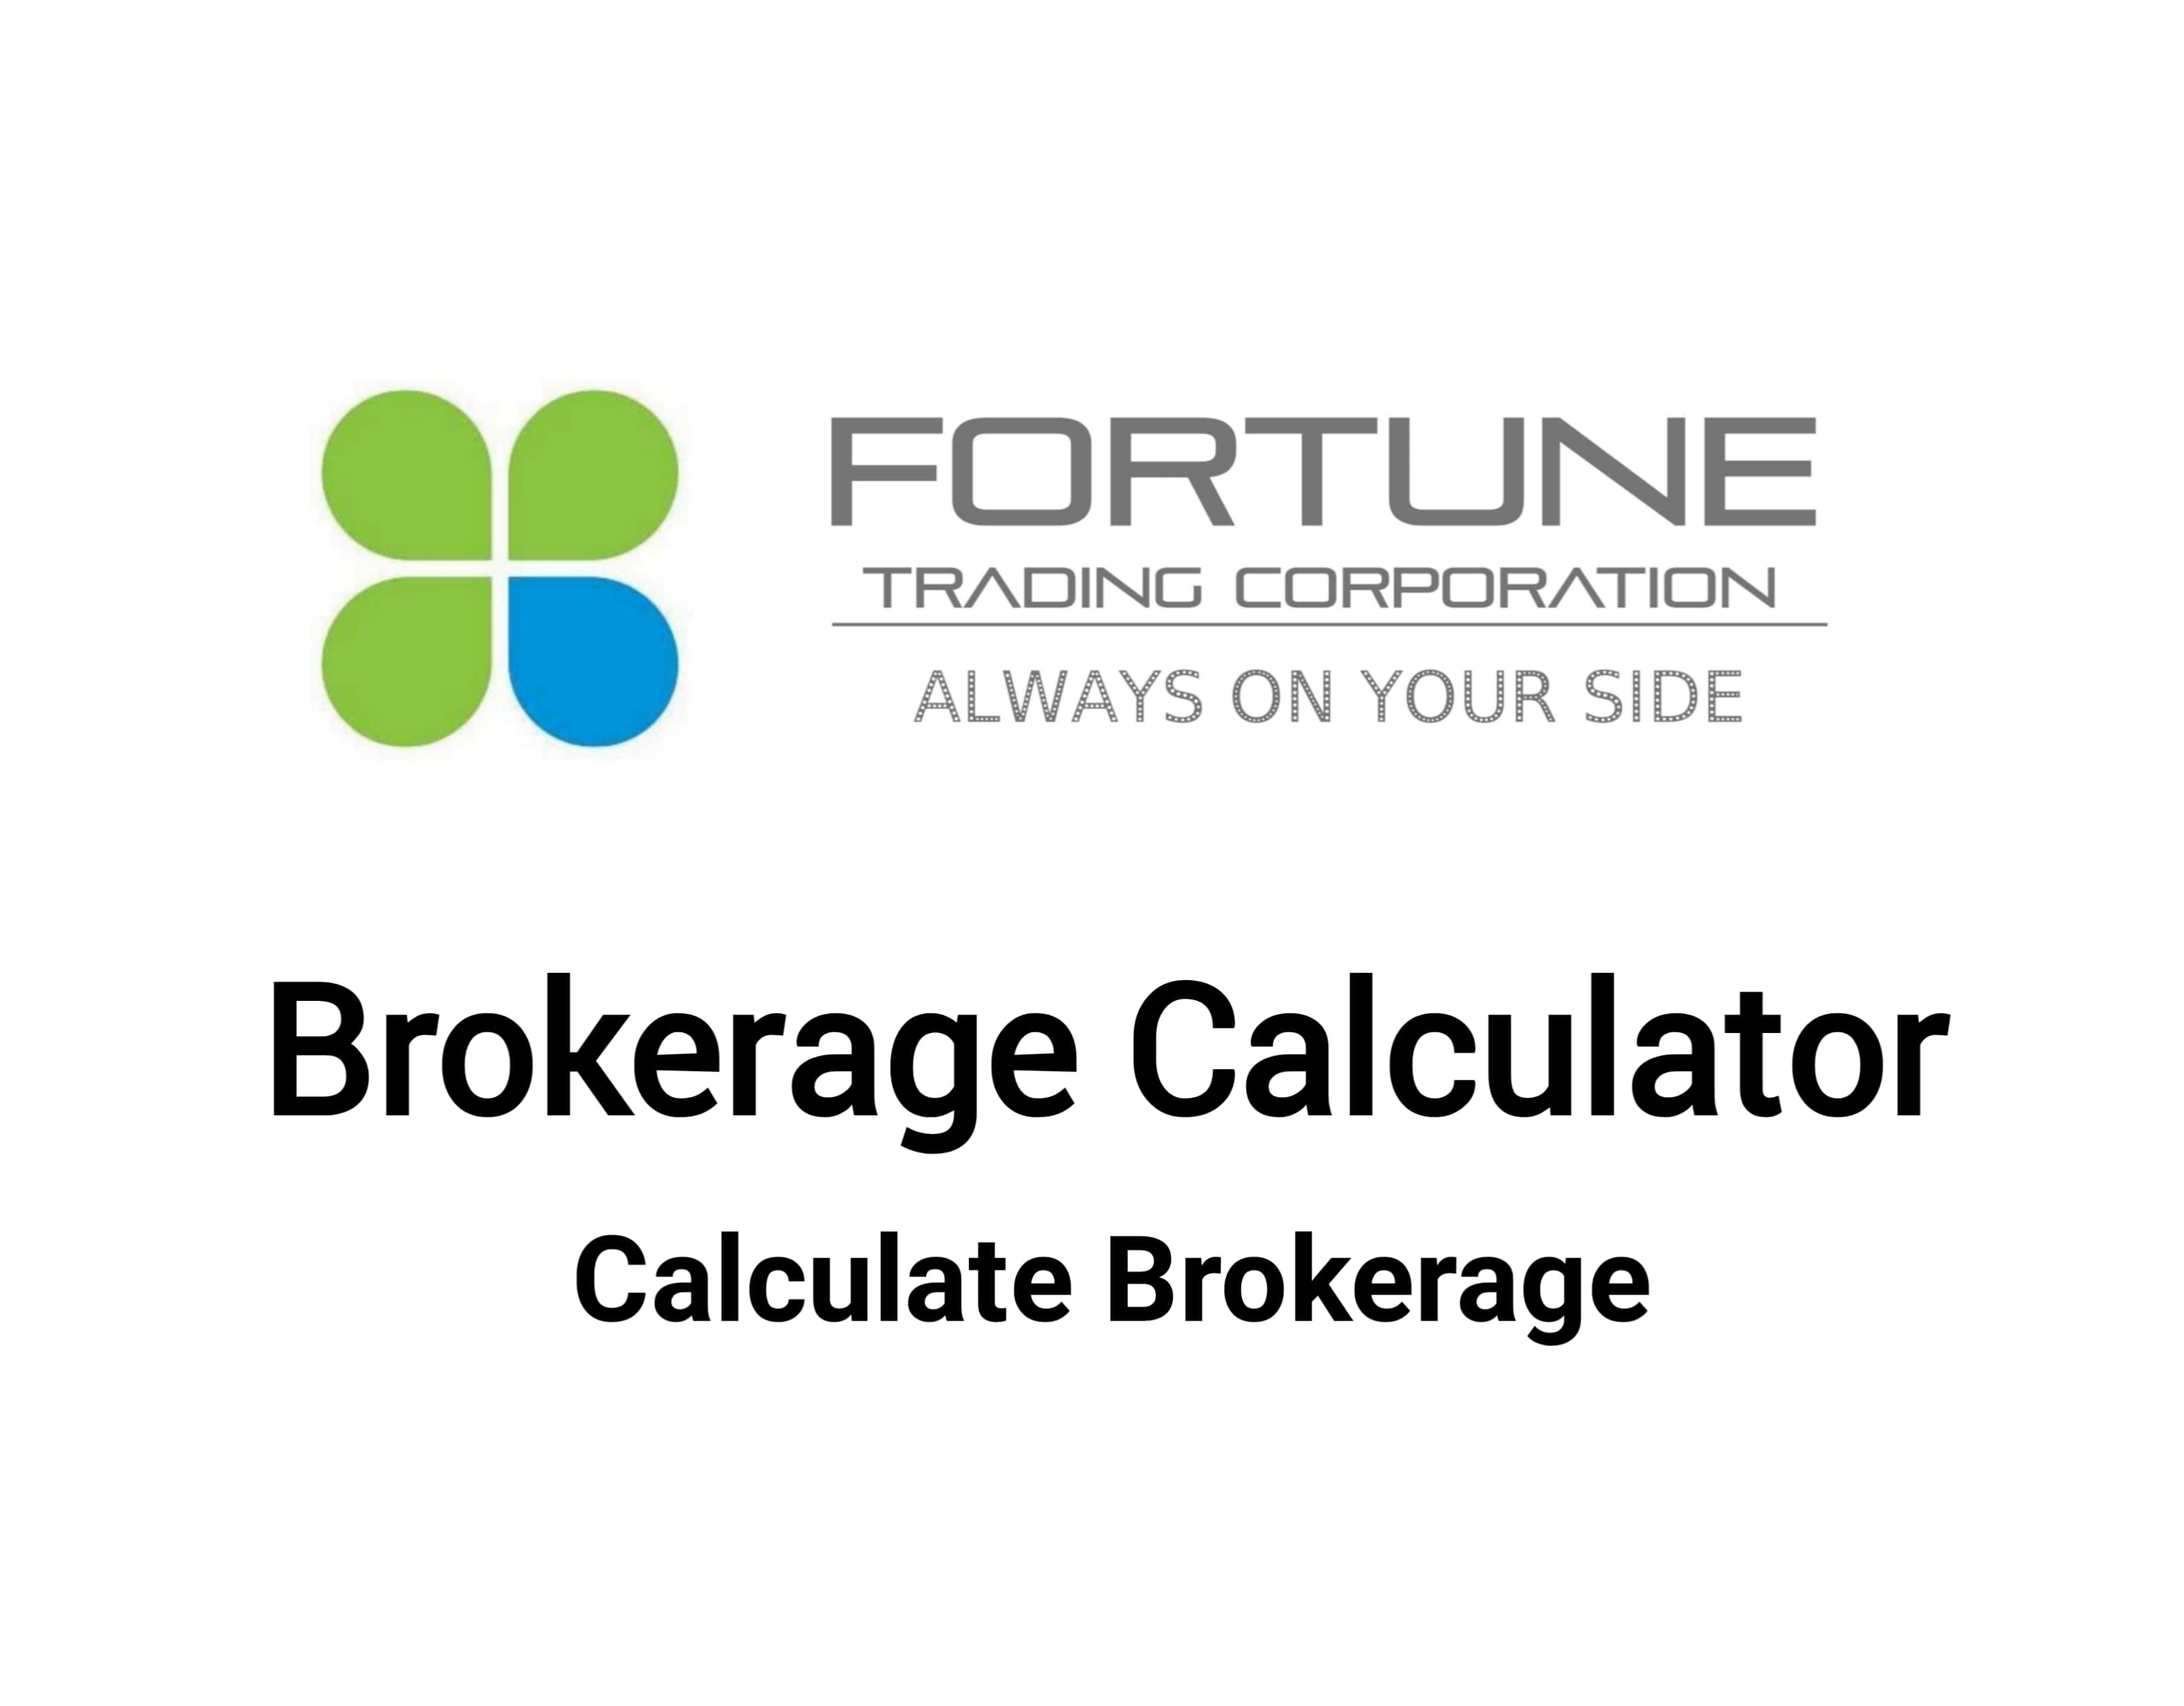 Fortune Trading Brokerage Calculator